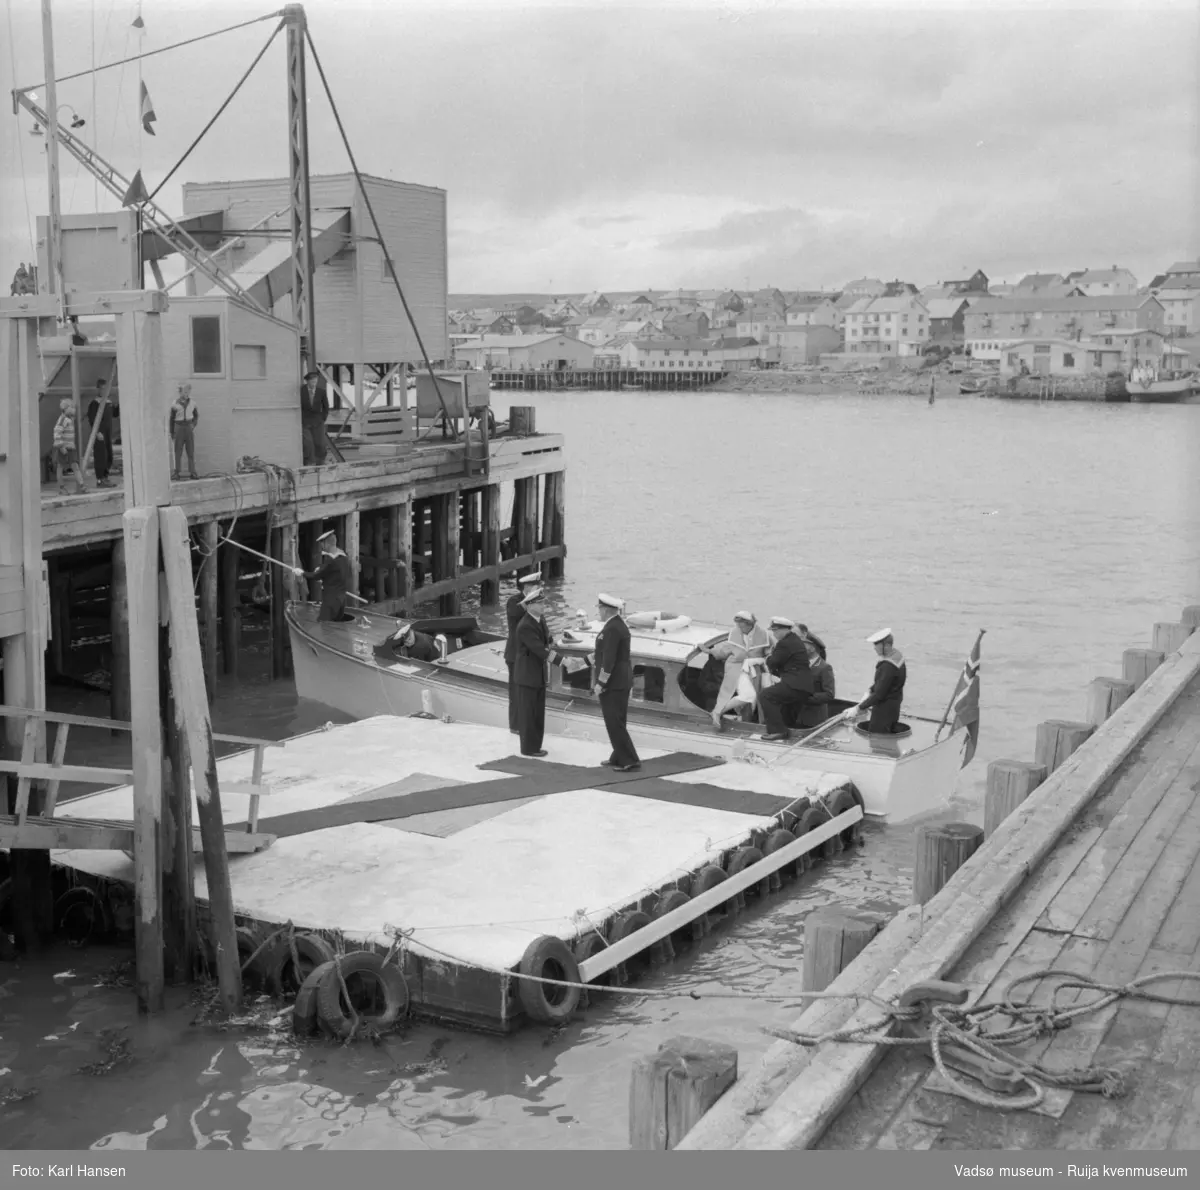 Vadsø juli 1959. Kongebesøk. Kongeskipets sjalupp ved kai på Vadsø havn. Vi ser bl.a. Kong Olav V og prinsesse Astrid